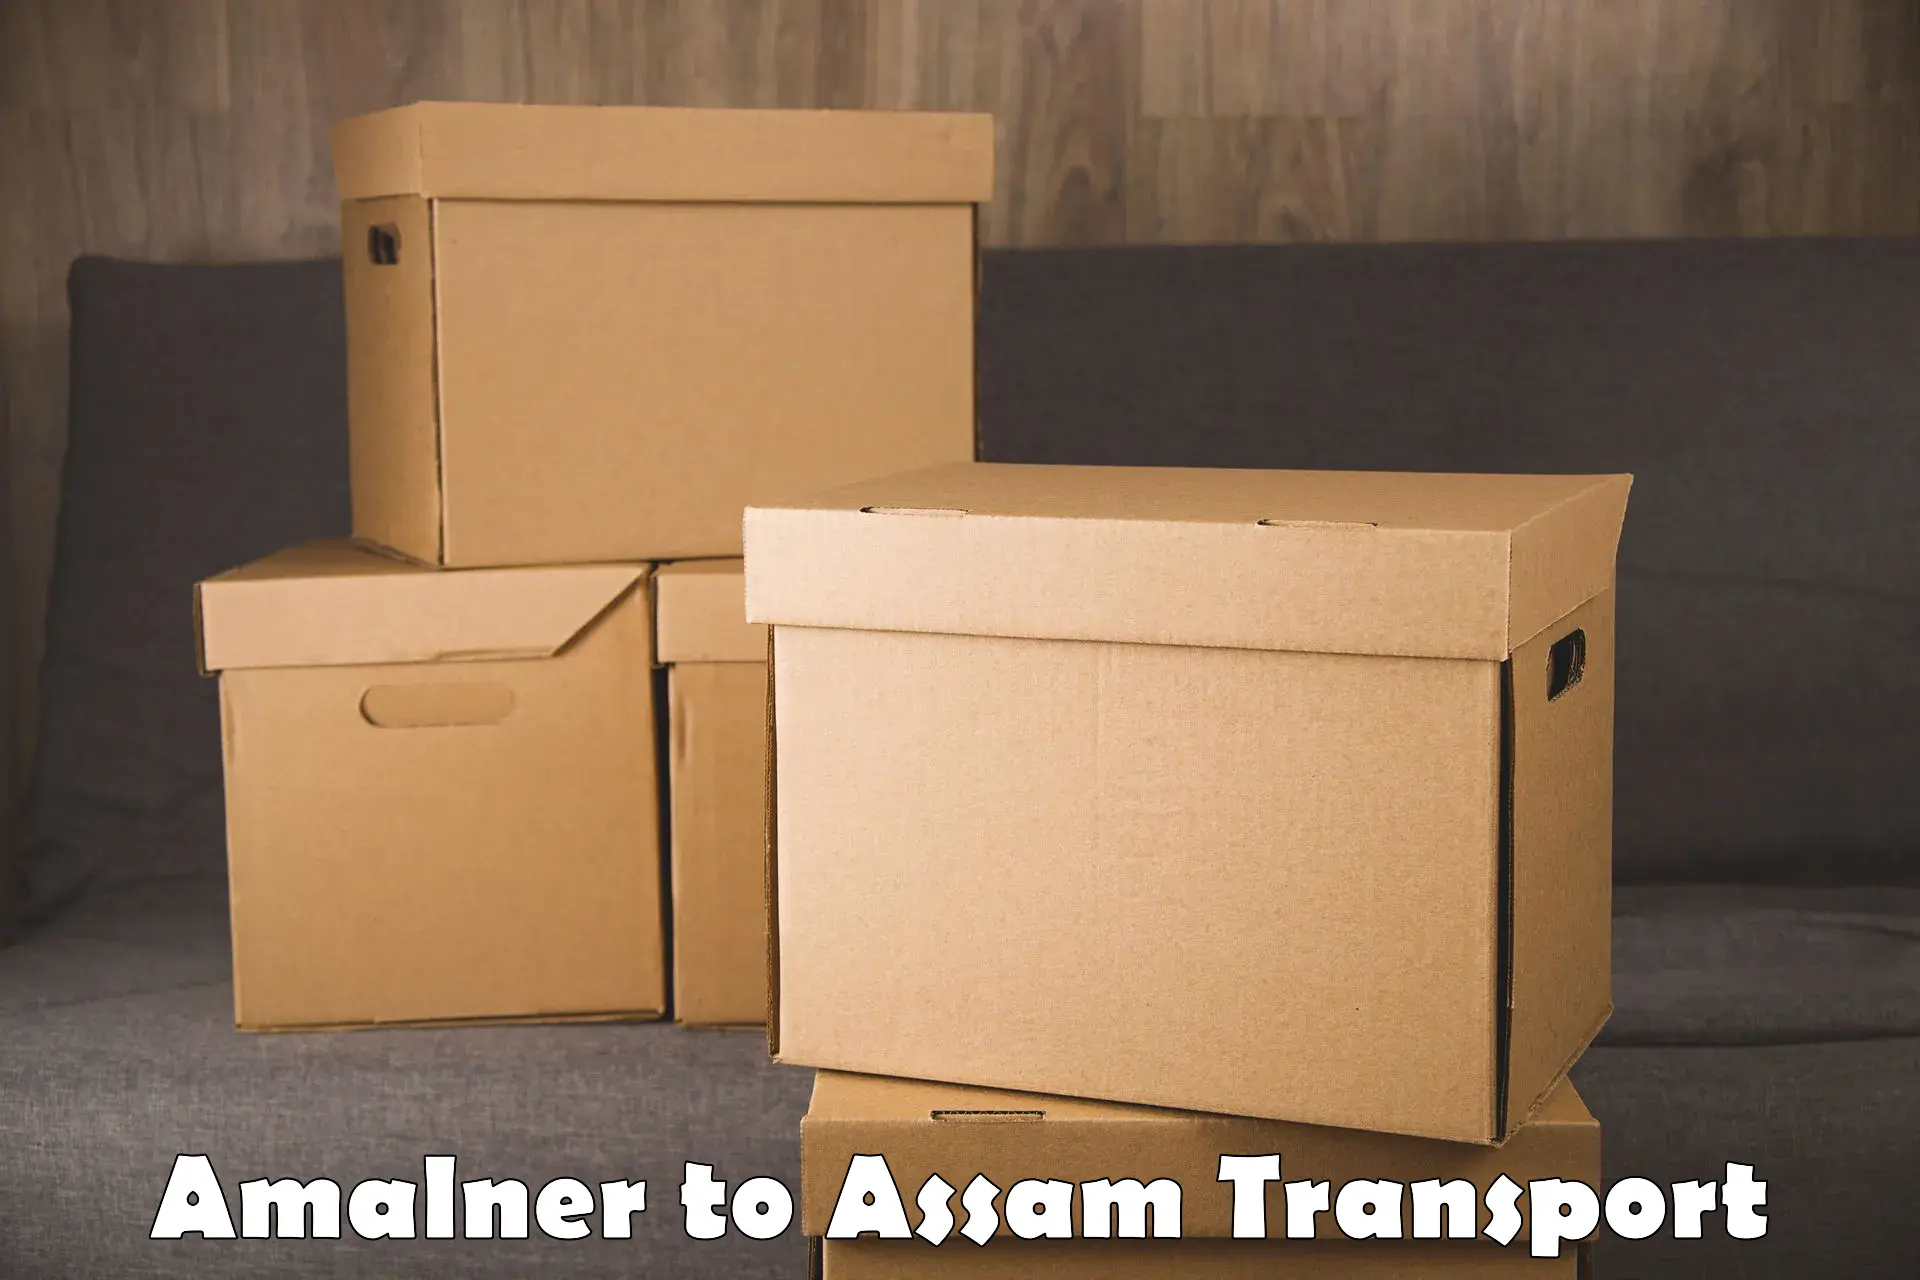 Vehicle transport services Amalner to Assam